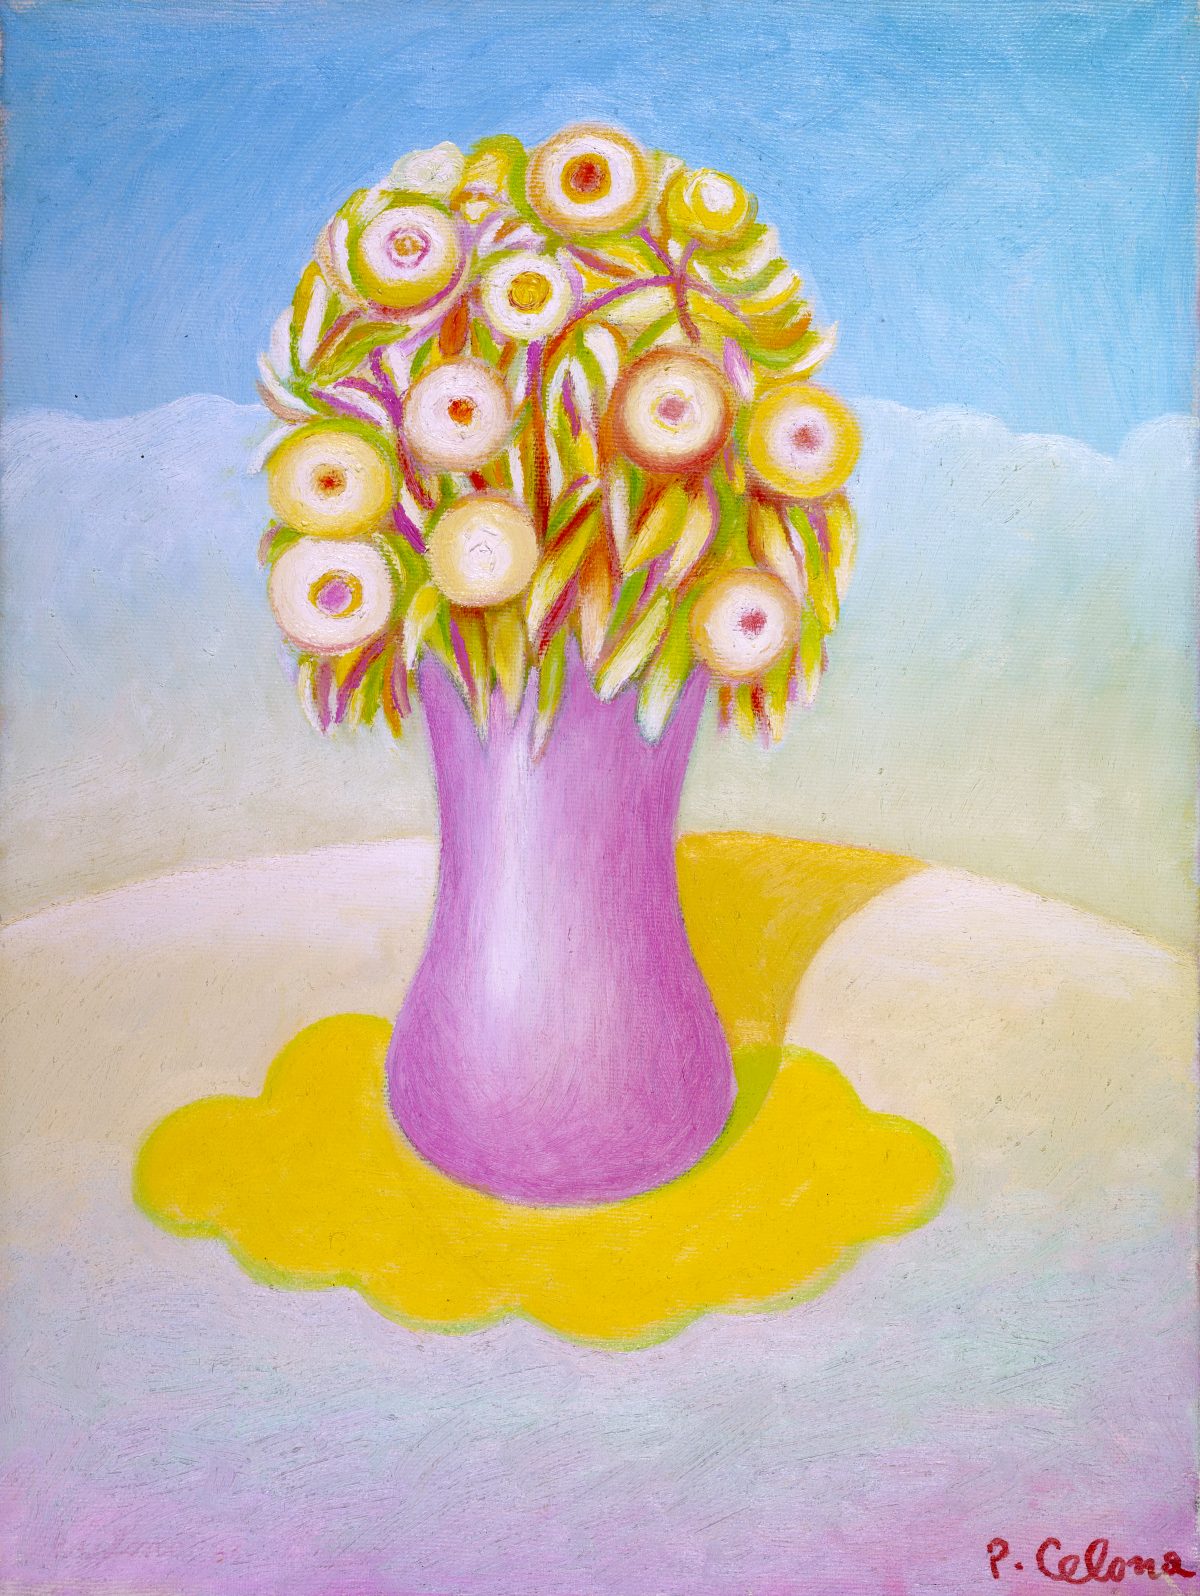 Vaso e fiori, ca. 1995
Olio su tela, 60 x 50 cm,
Collezione privata,
NMV116